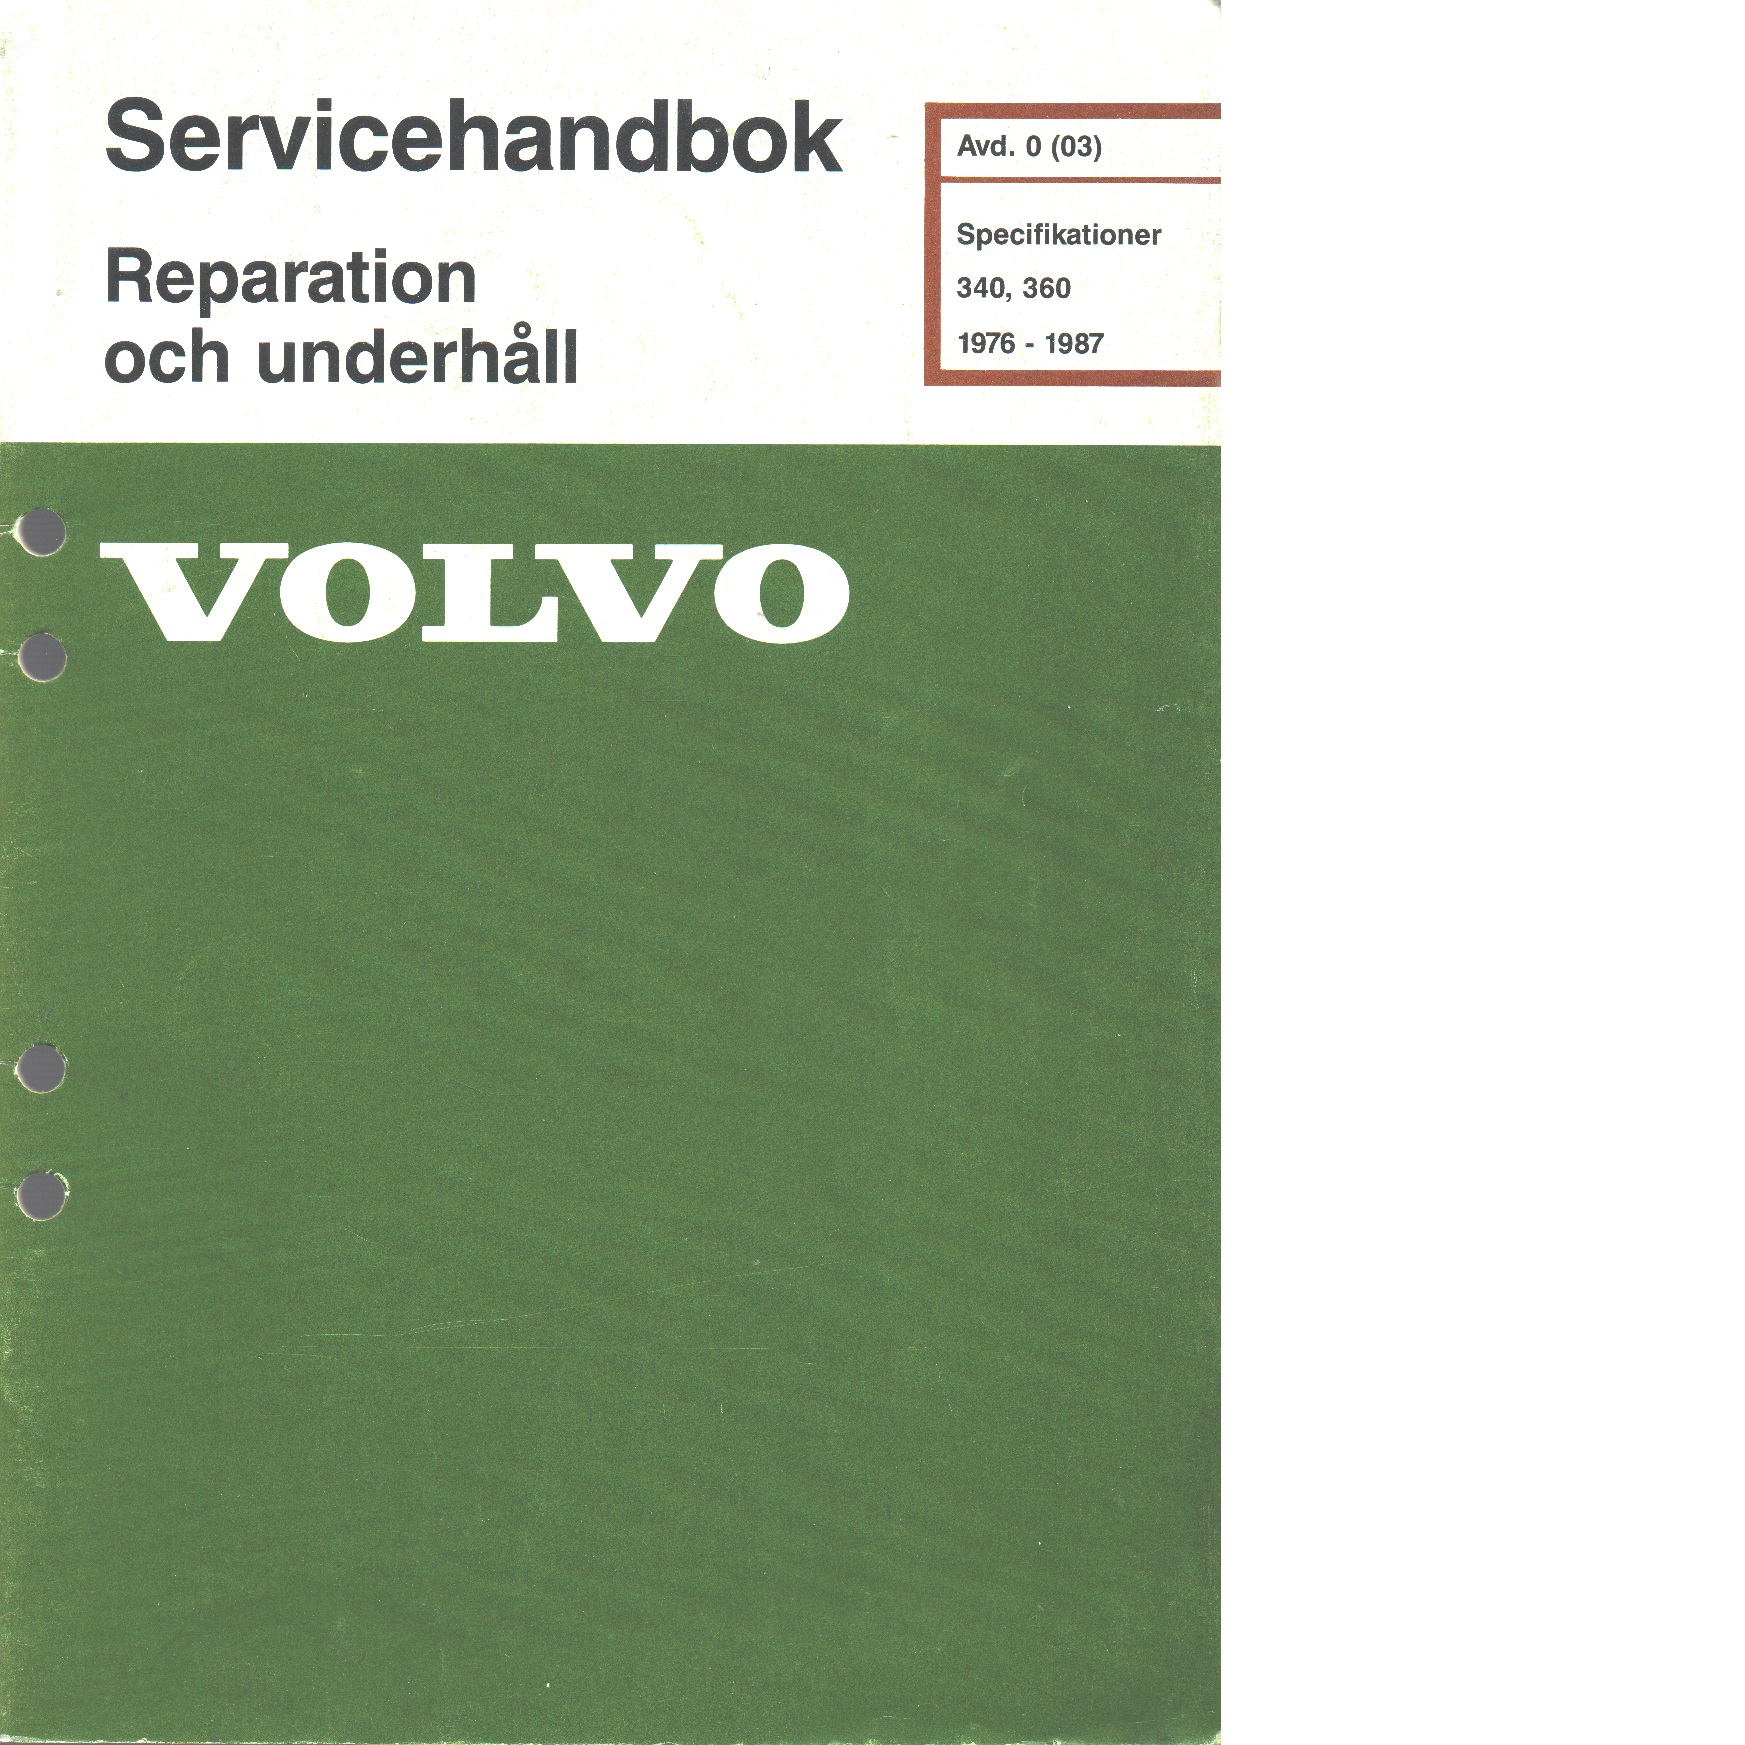 Volvo servicehandbok - Red.